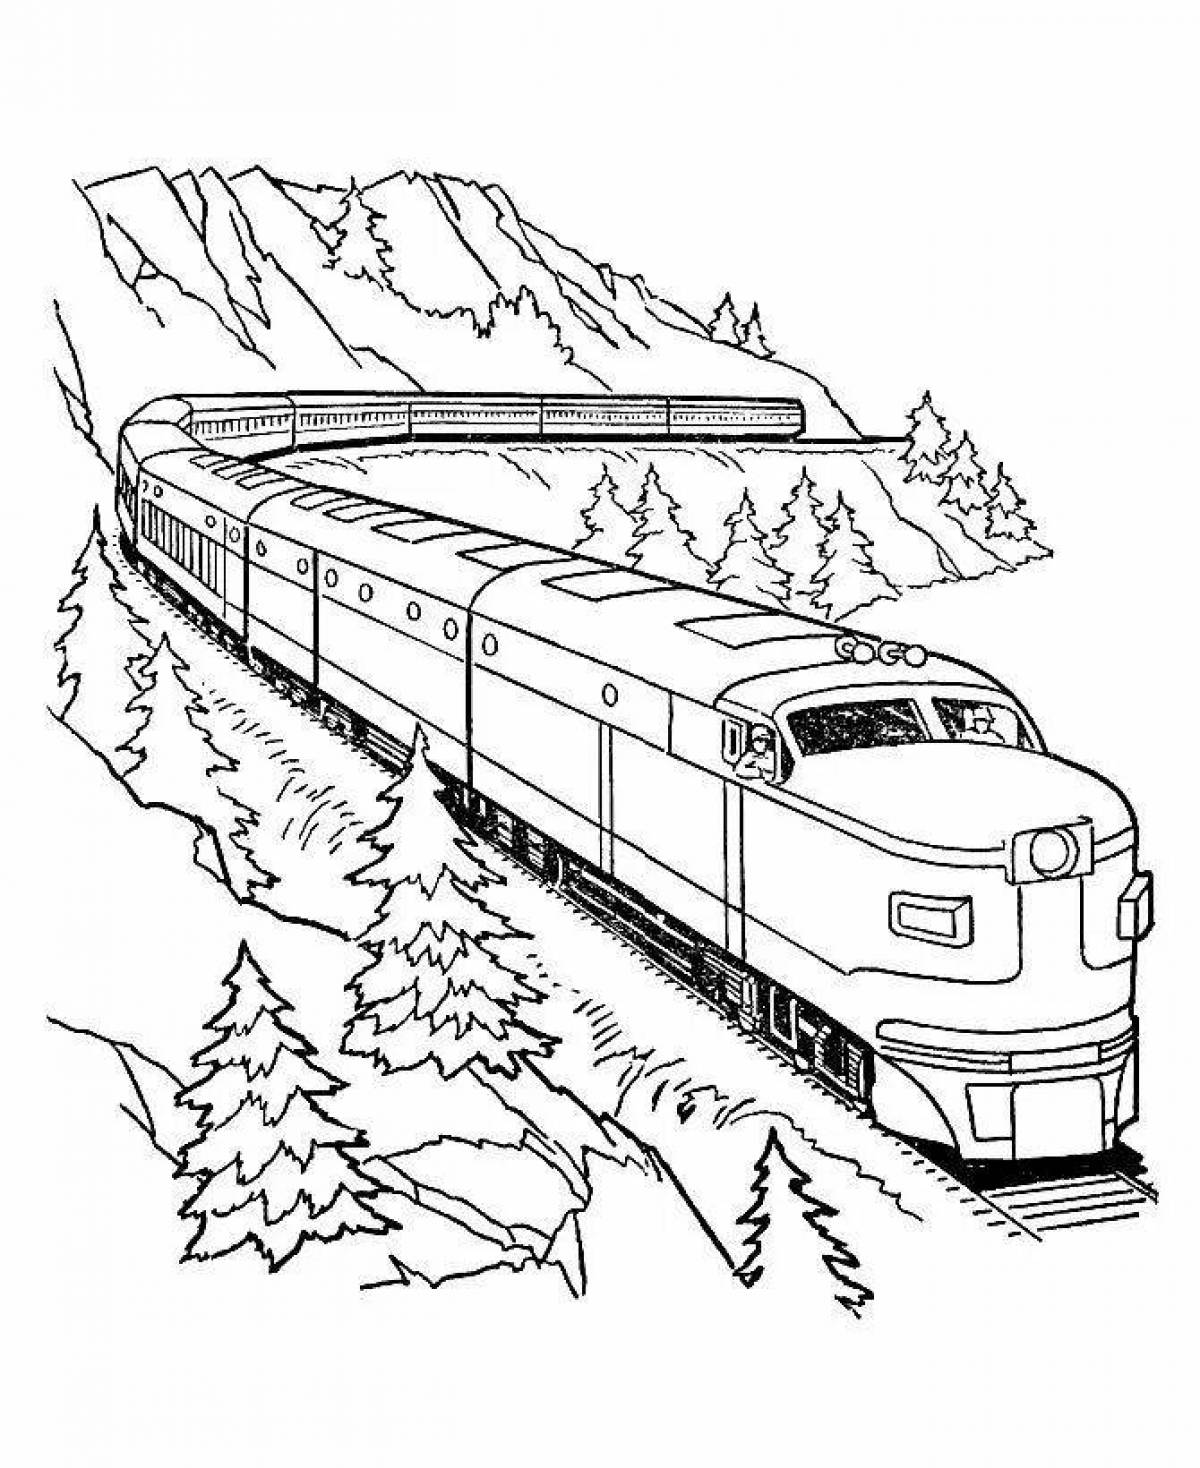 Увлекательная раскраска поезда ржд